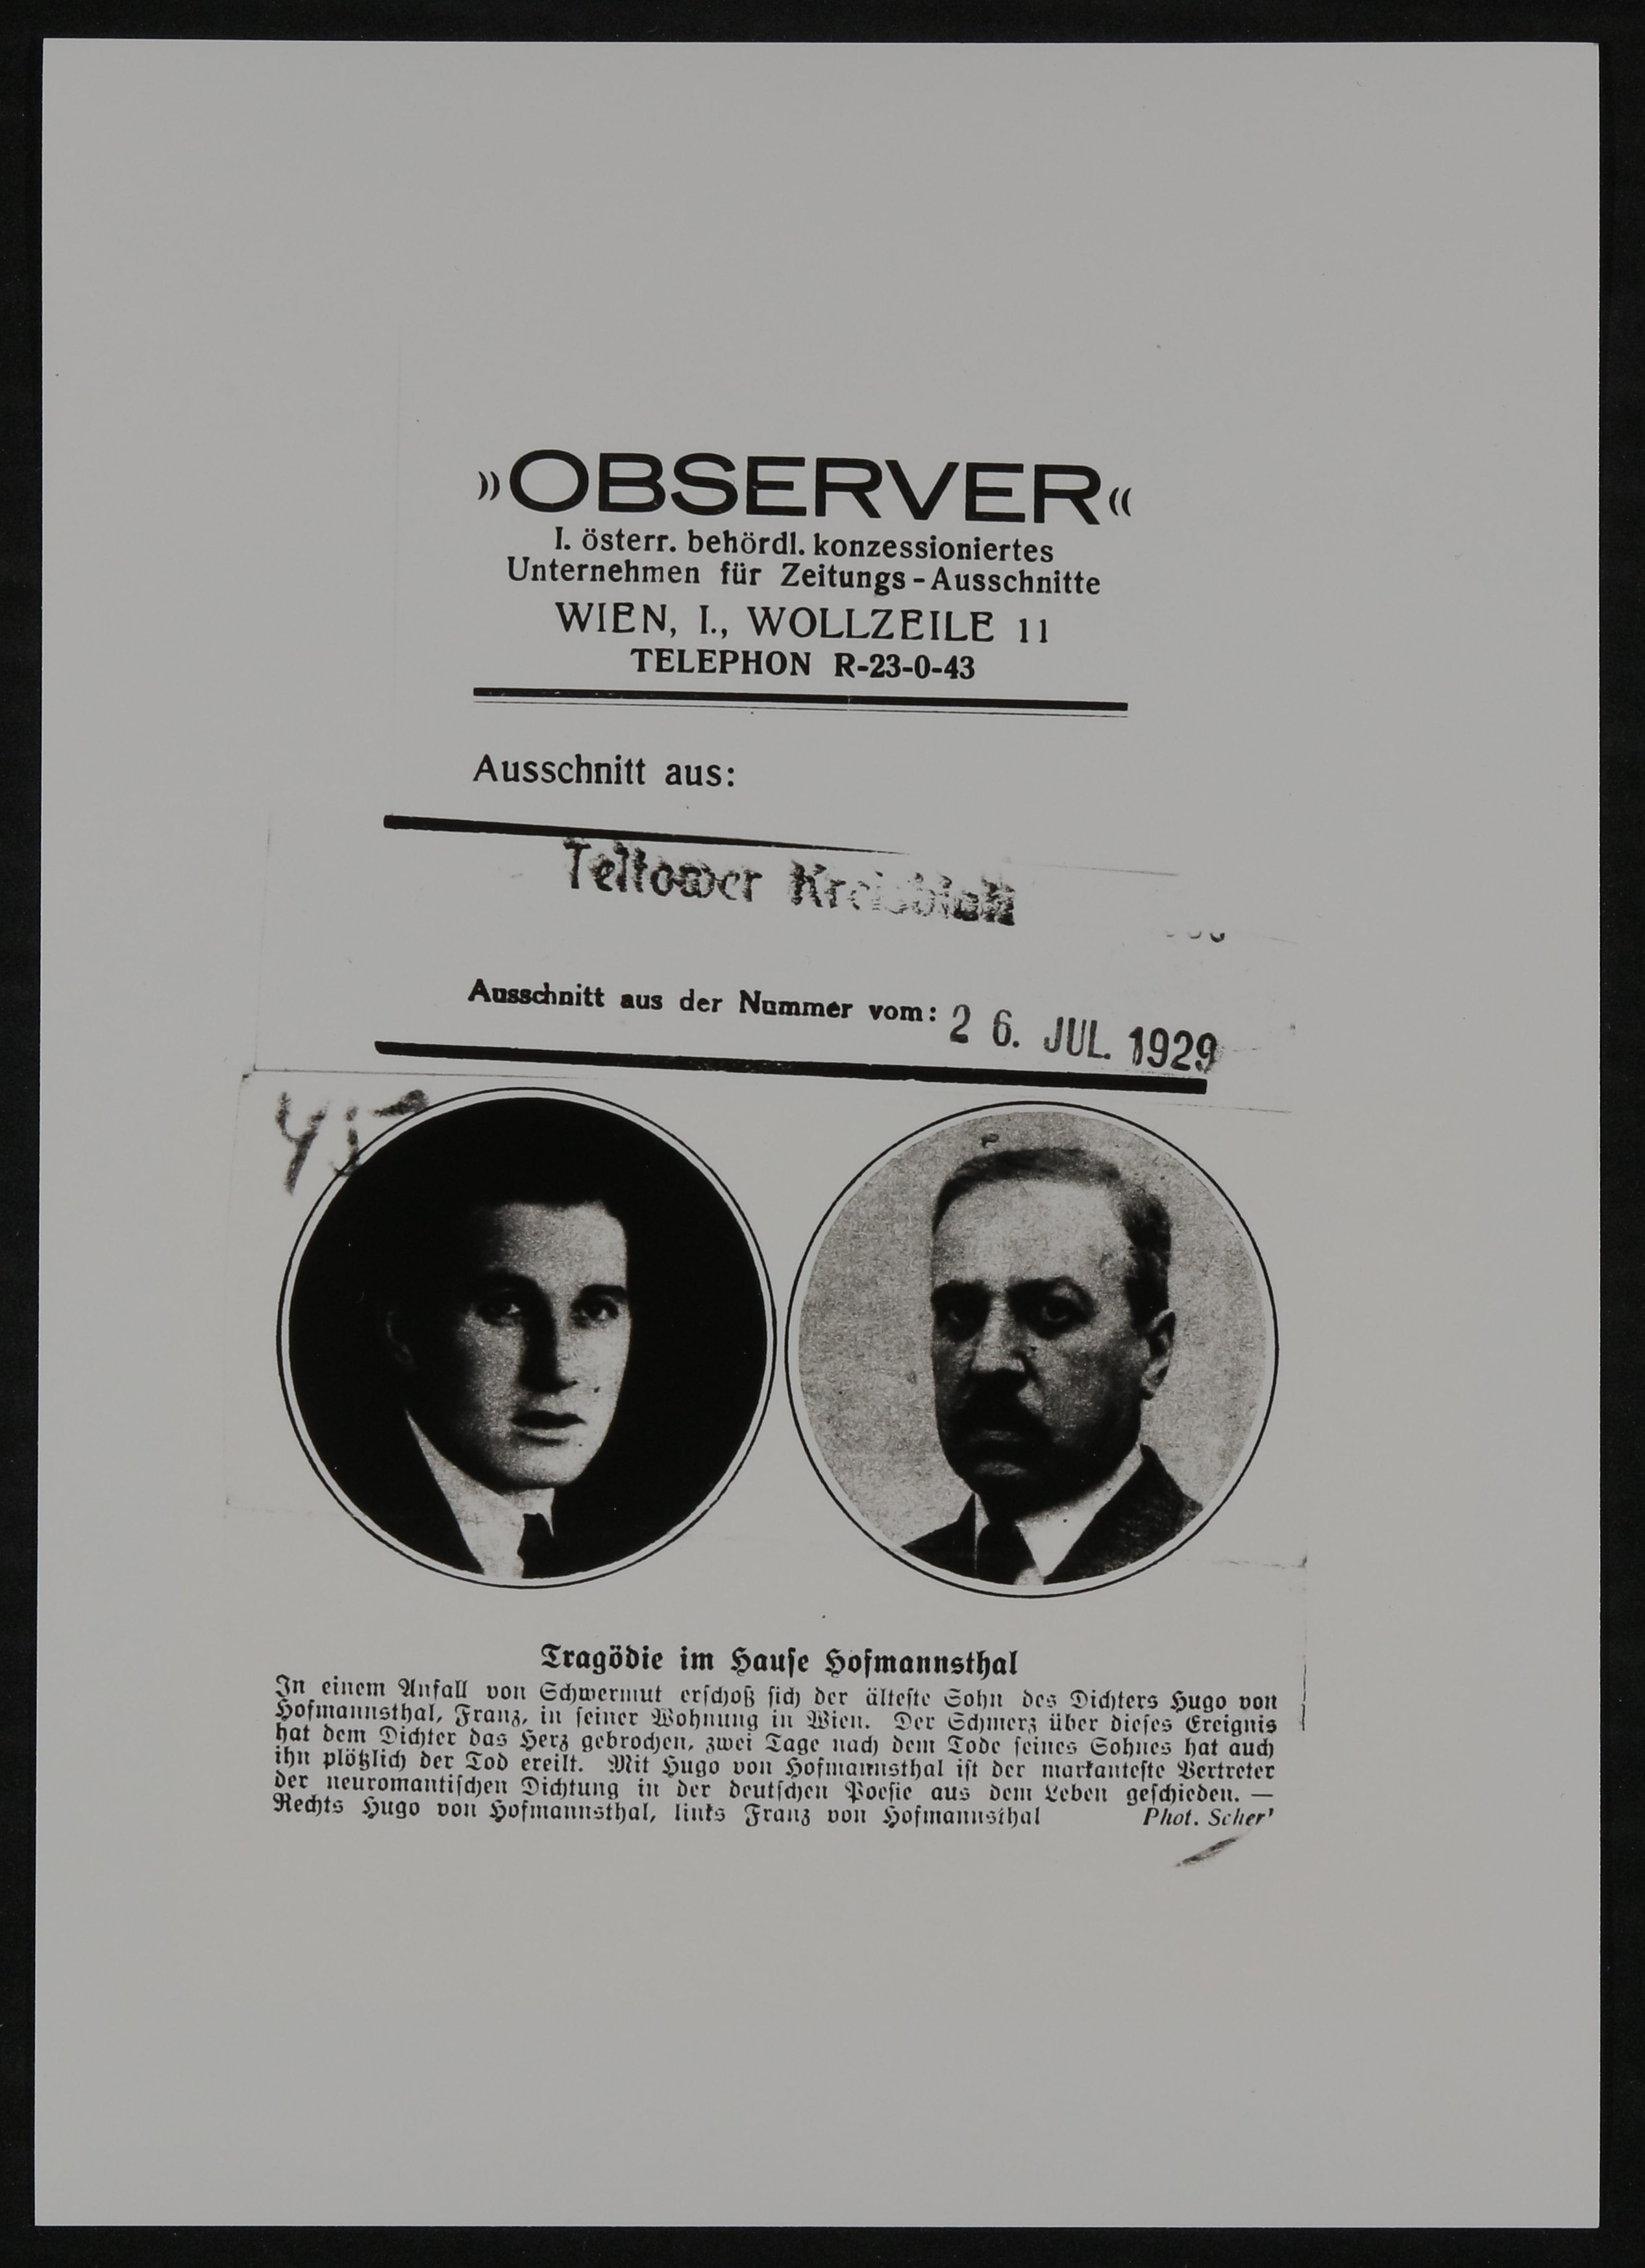 Ausschnitt aus "Teltower Kreisblatt" vom 26.07.1929 zum Tod von Franz und Hugo von Hofmannsthal (Observer) (Freies Deutsches Hochstift / Frankfurter Goethe-Museum CC BY-NC-SA)